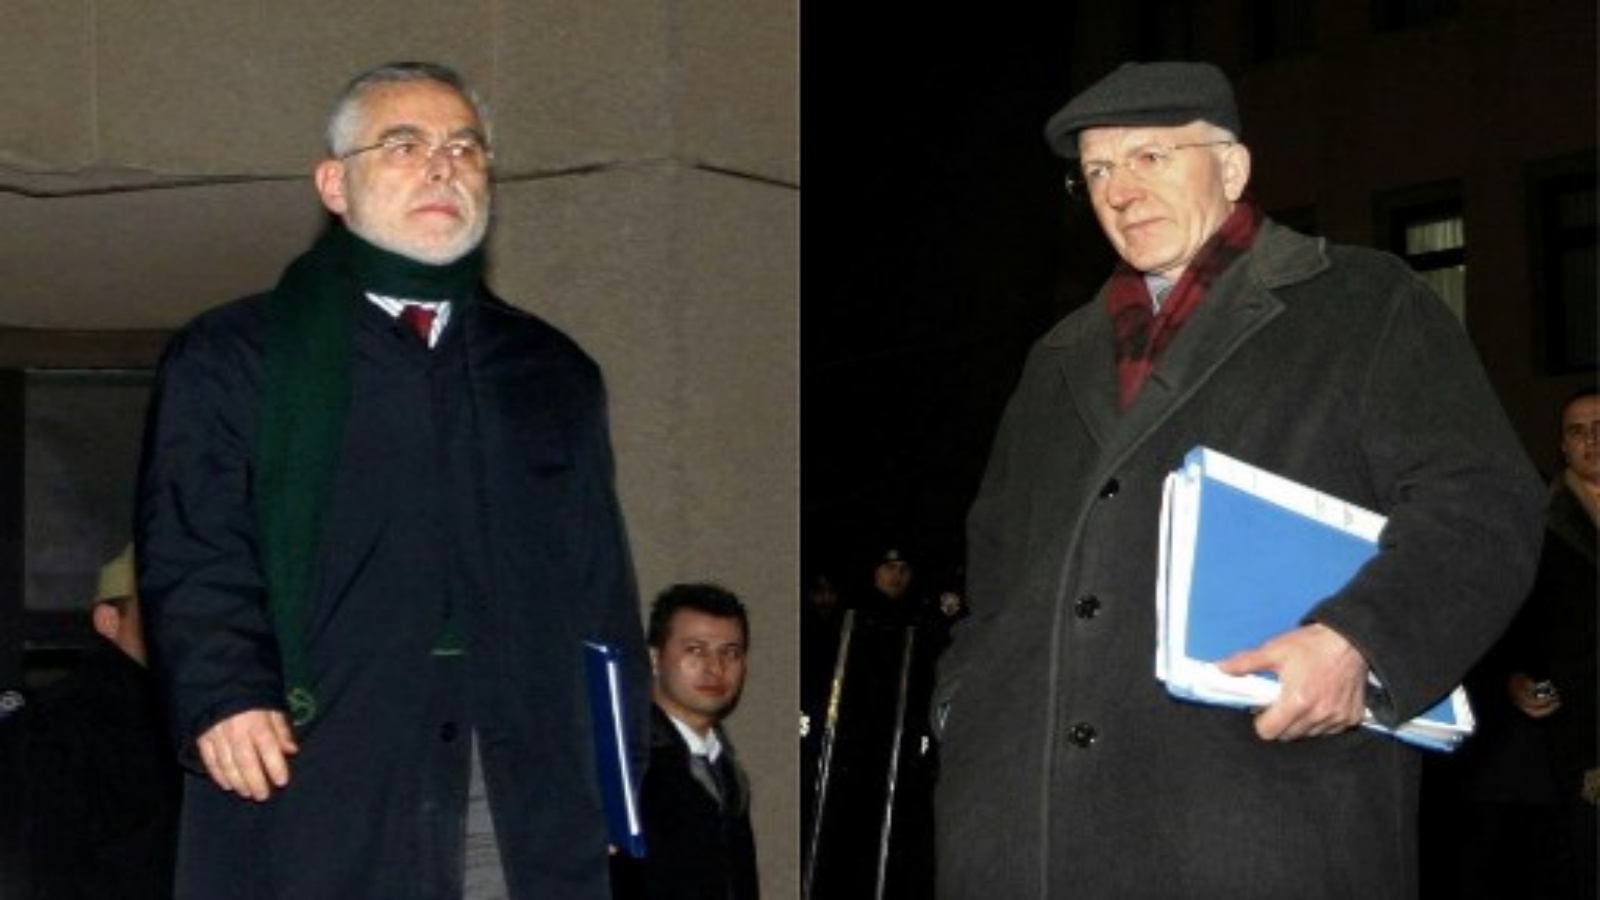 صورة تم التقاطها في 15 فبراير 2006 للبروفيسور باسكي وهران (يسار) والبروفيسور إبراهيم كابوغلو يغادران دار المحكمة في أنقرة بعد تأجيل قضيتهما. وقد اتهما في عام 2005 بـ 